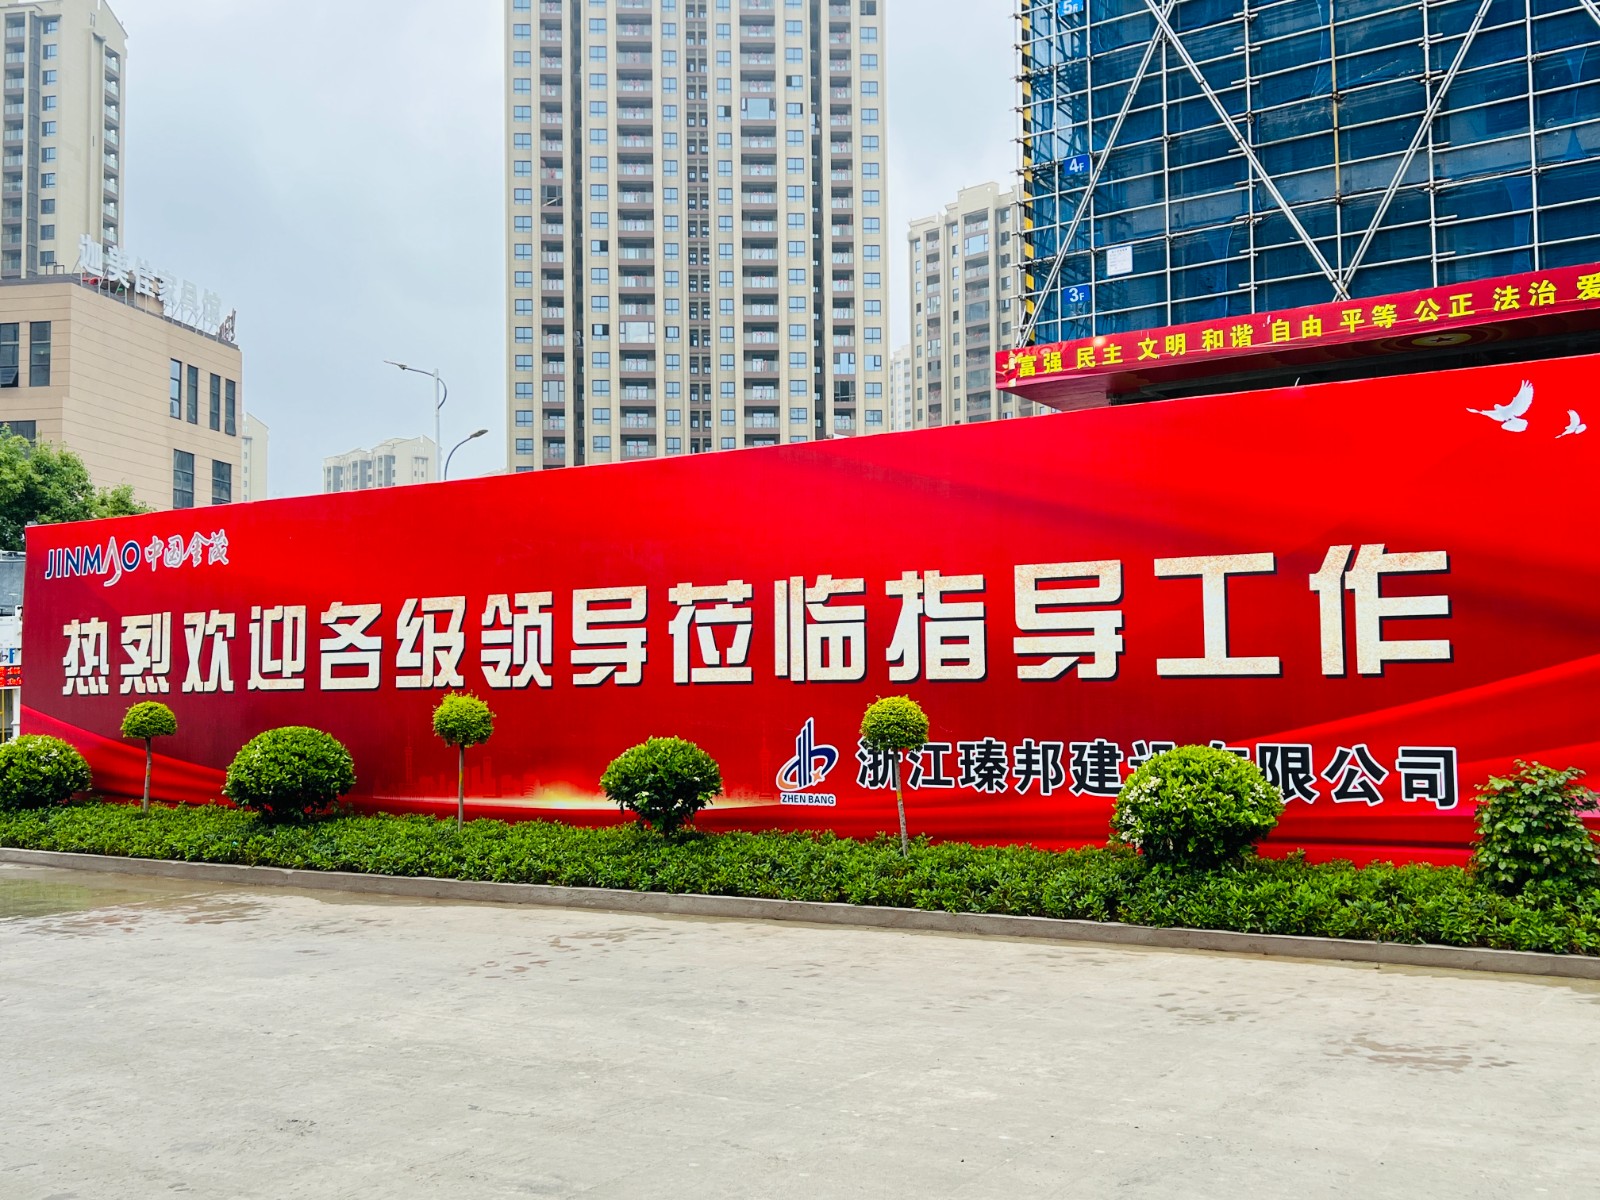 上海浙江金茂与上海博普LOFT专利车库的结合碰撞，再创明星楼盘。